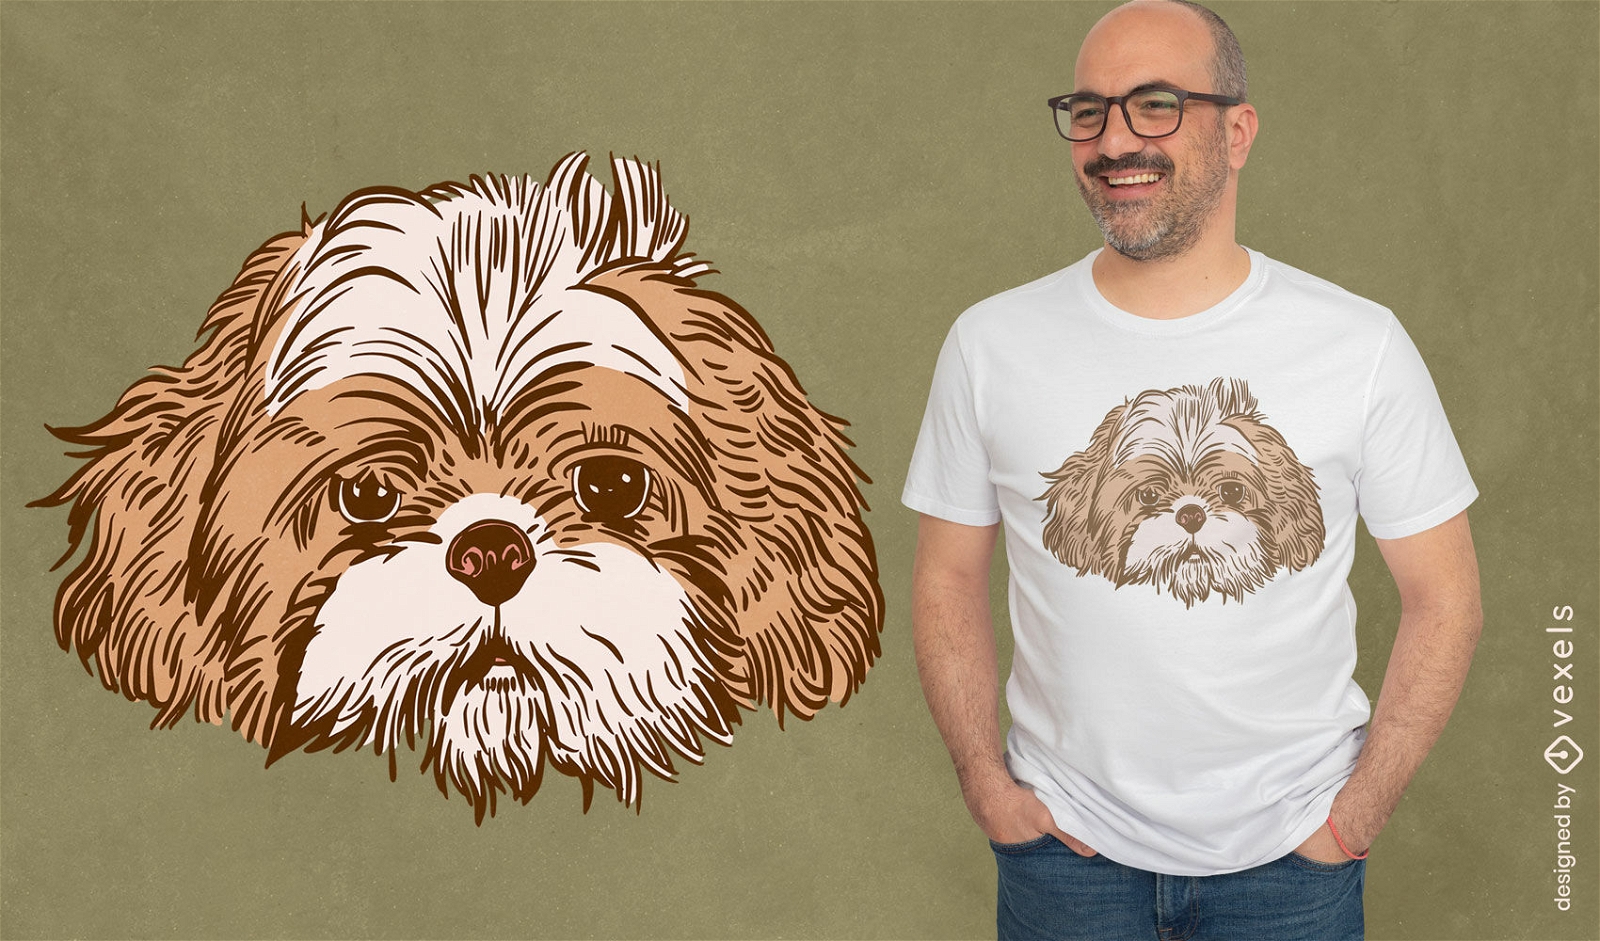 Shihtzu dog t-shirt design